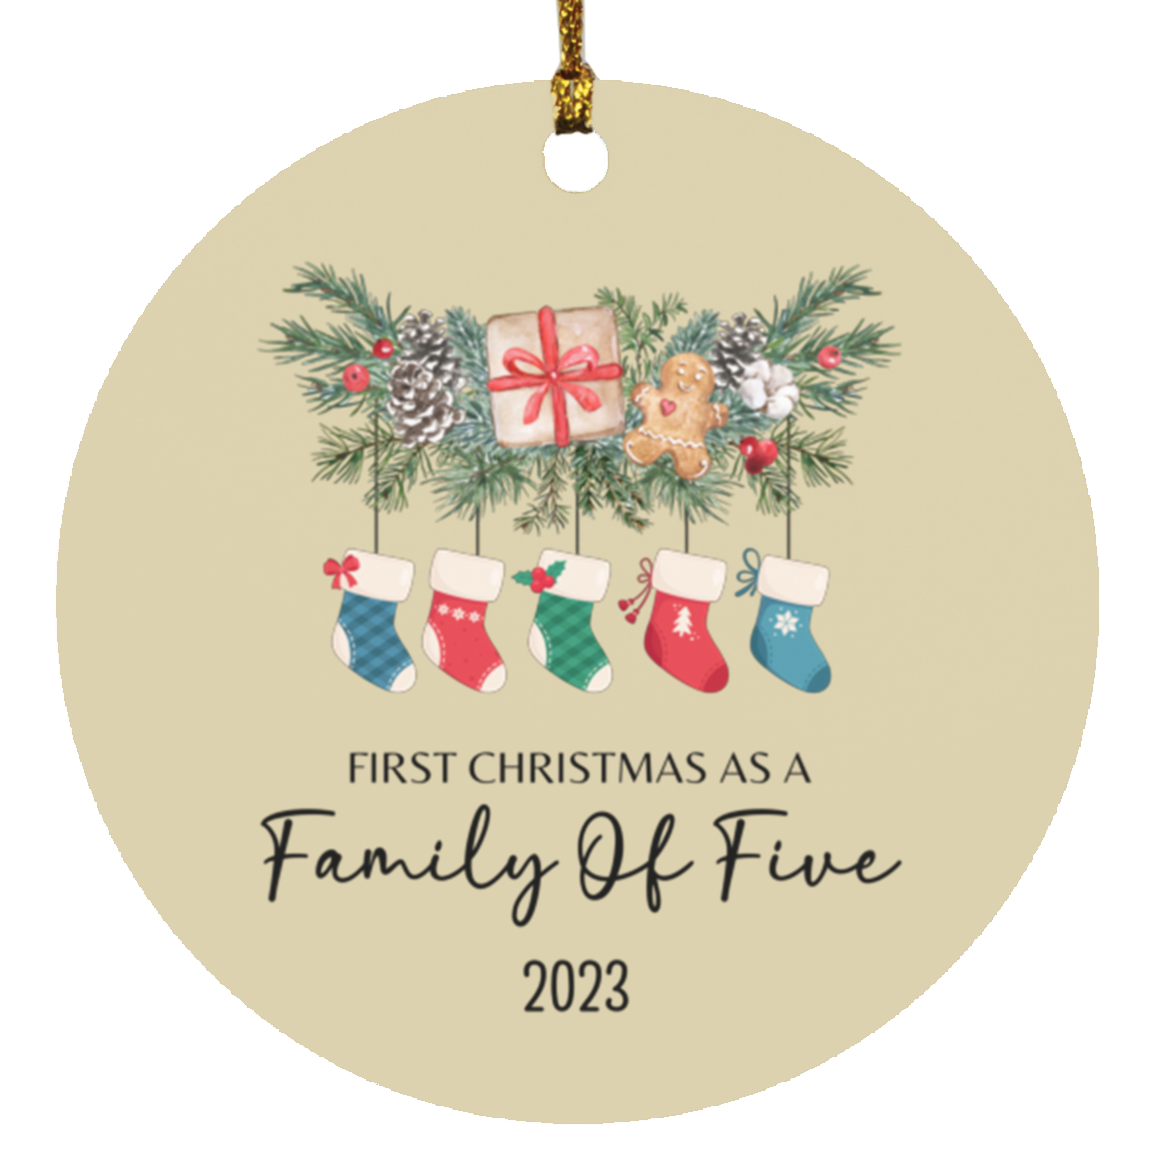 Primera Navidad en familia de (PERSONALIZAR CANTIDAD)- Adornos circulares de madera